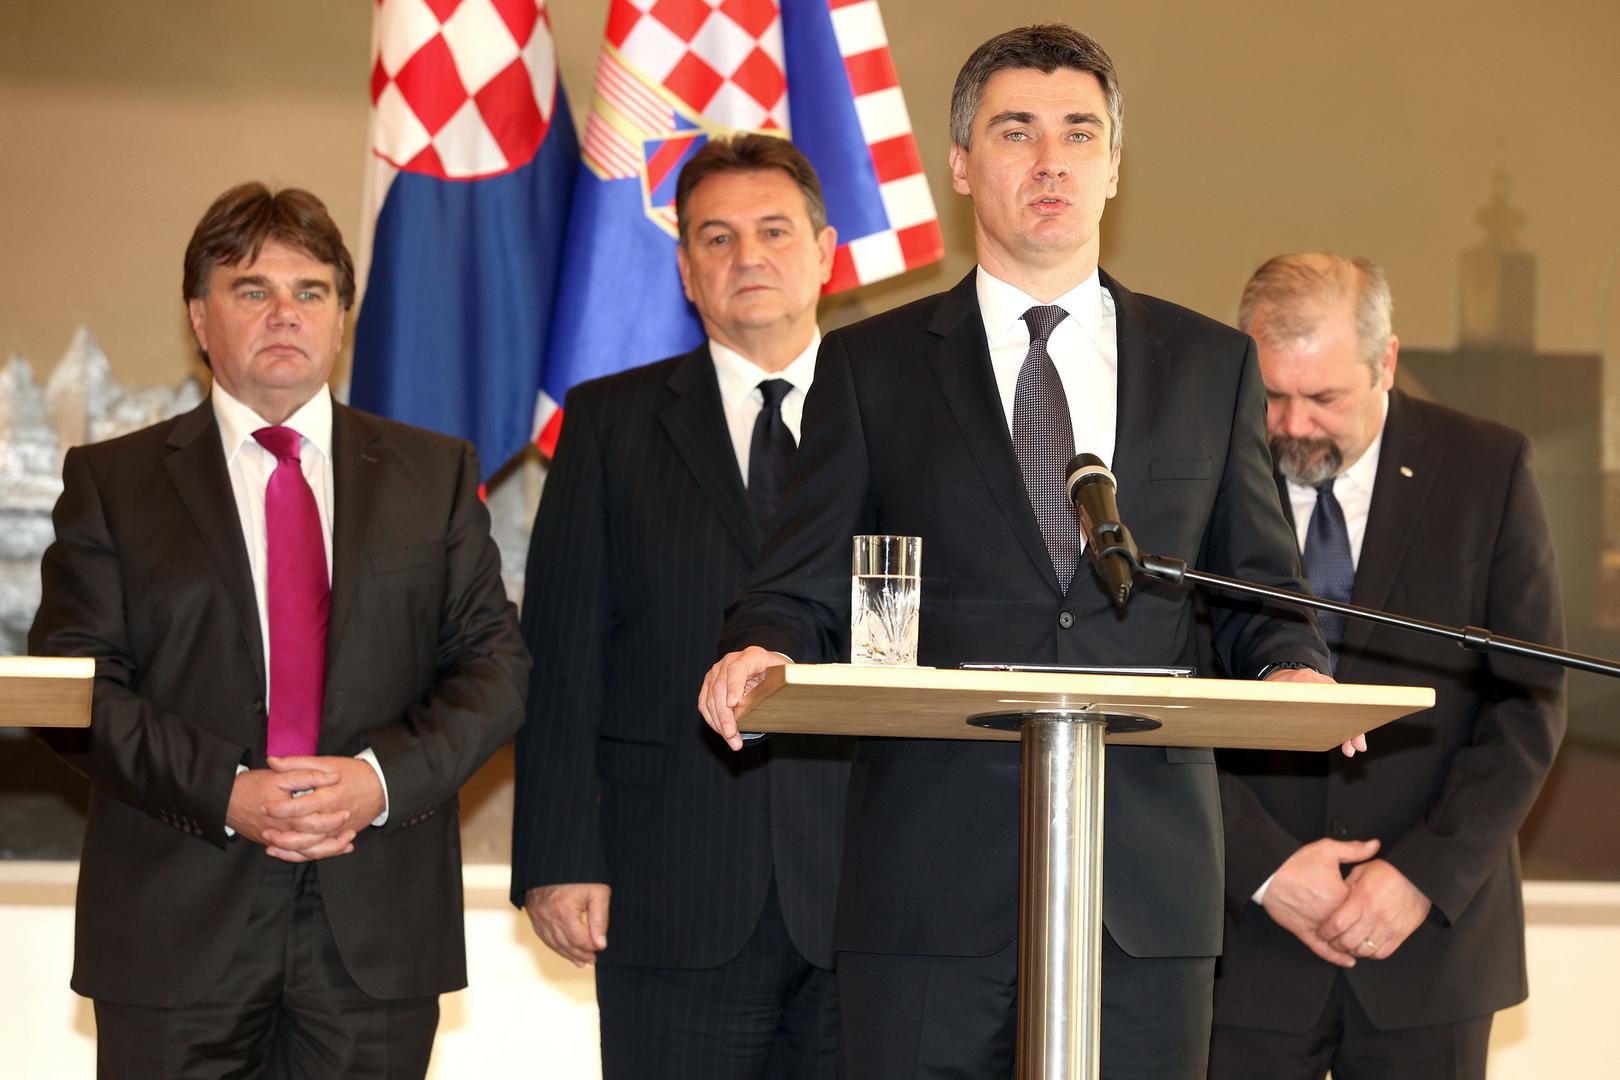 Milanović postaje predsjednik Vlade nakon izbora 2011. godine. U 7. sazivu SDP je imao 56 mandata, a na vlast su došli u sklopu Kukuriku koalicije.